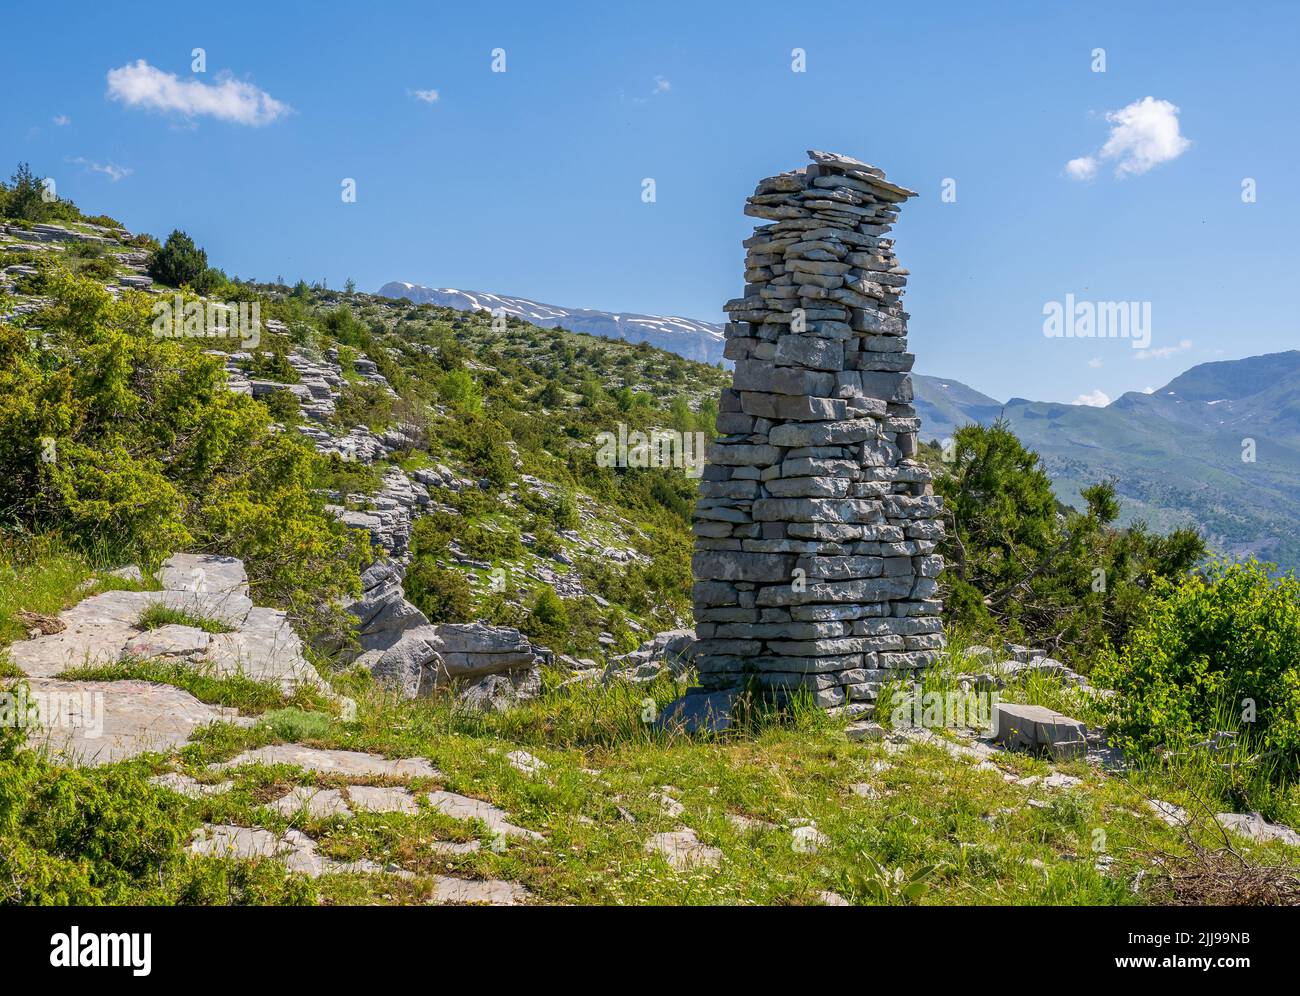 Pietra obelisco cairn da un sentiero di montagna sopra il villaggio di Tsepelovo nella regione di Zagori della Grecia settentrionale con il Monte Timfi in lontananza Foto Stock